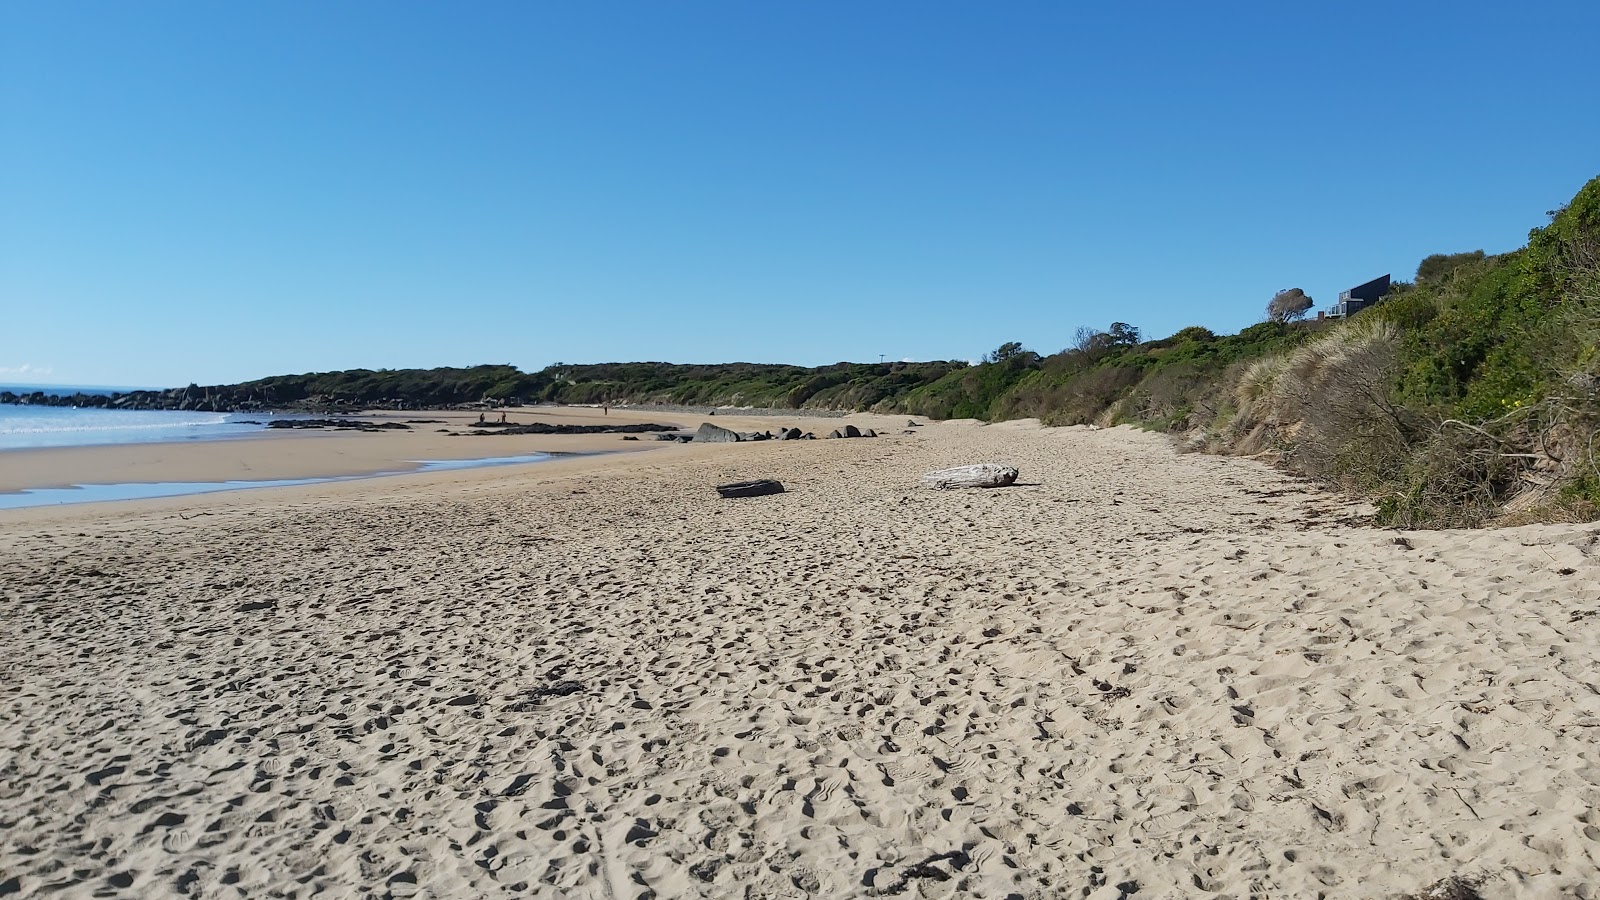 Zdjęcie Coles Beach z powierzchnią jasny piasek